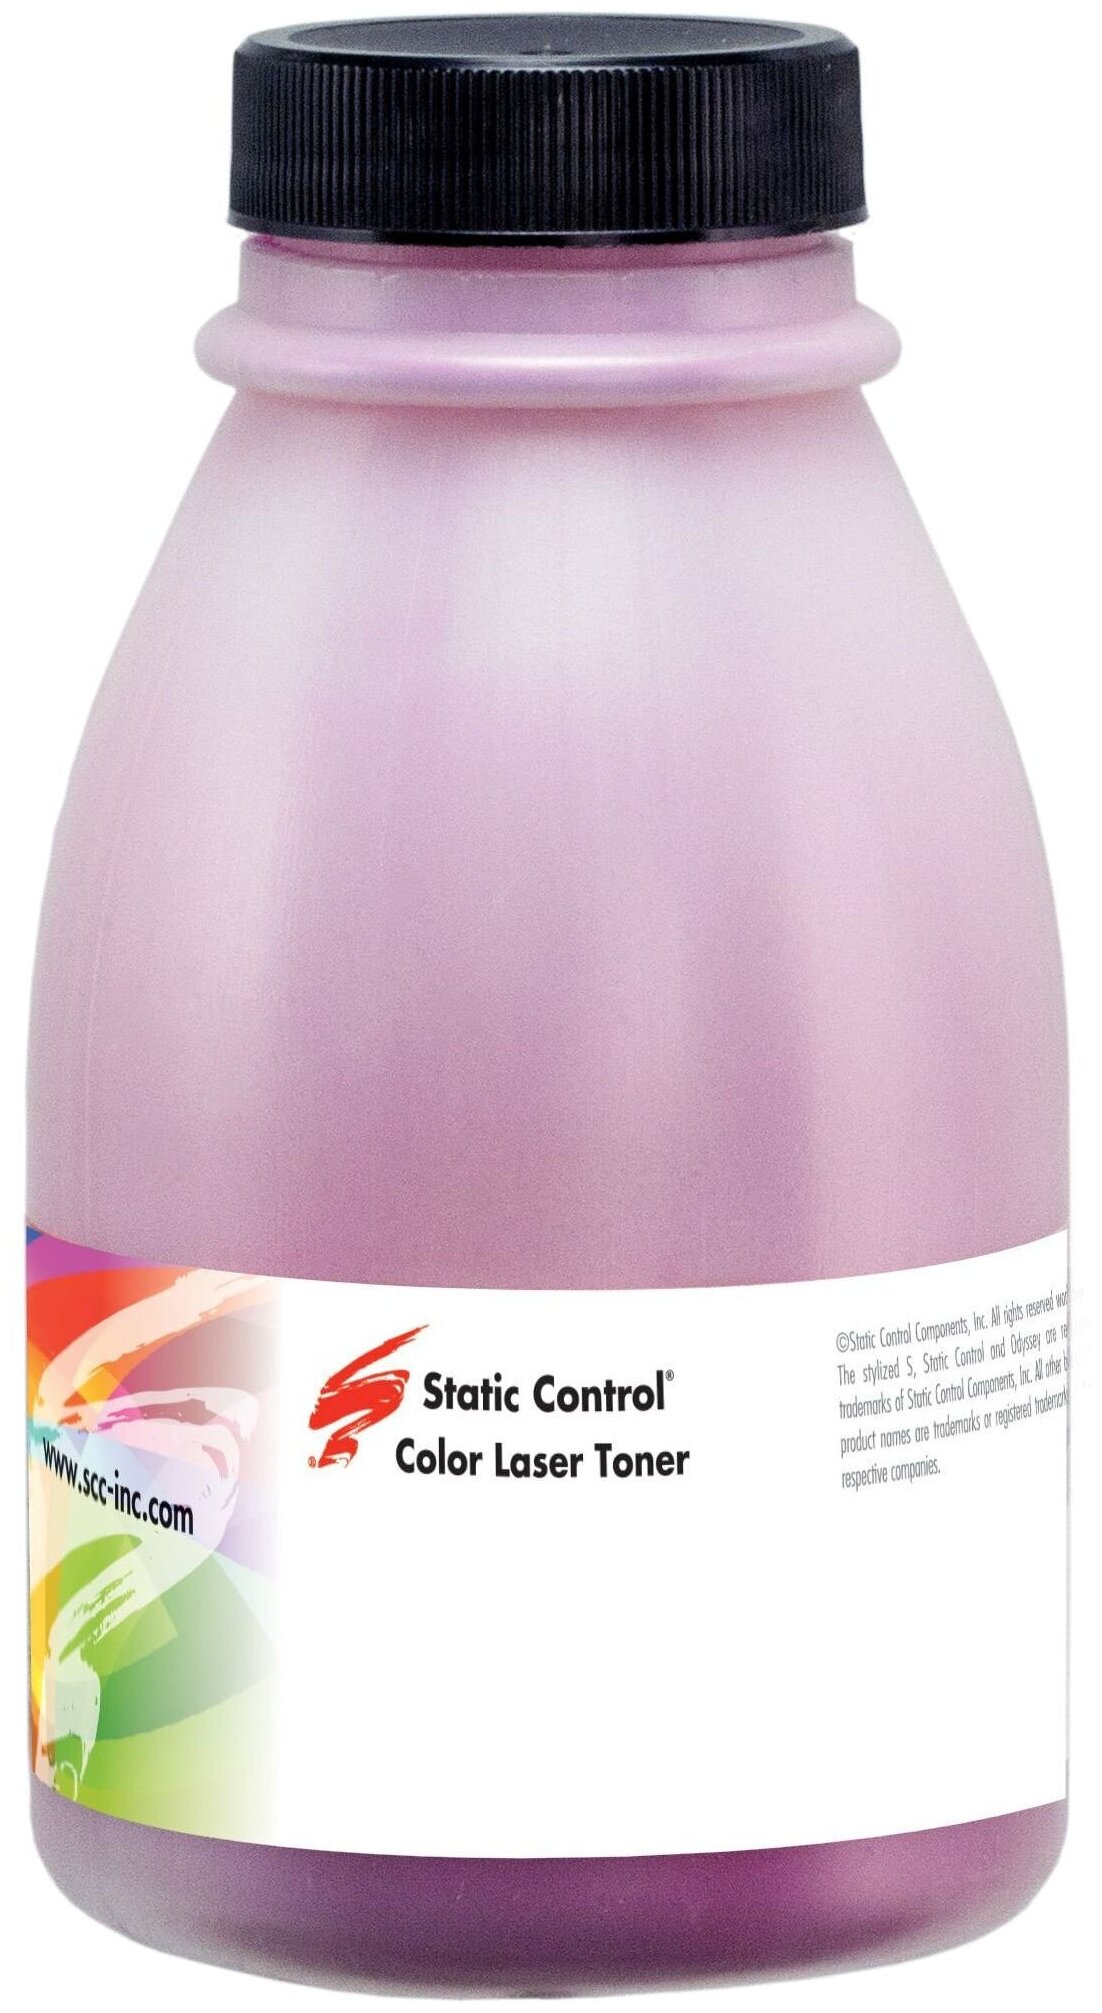 Тонер Static Control B3170-50B-MAOS, бутыль 50 г, пурпурный, совместимый для Brother HL-3170 (B3170-50B-MAOS)